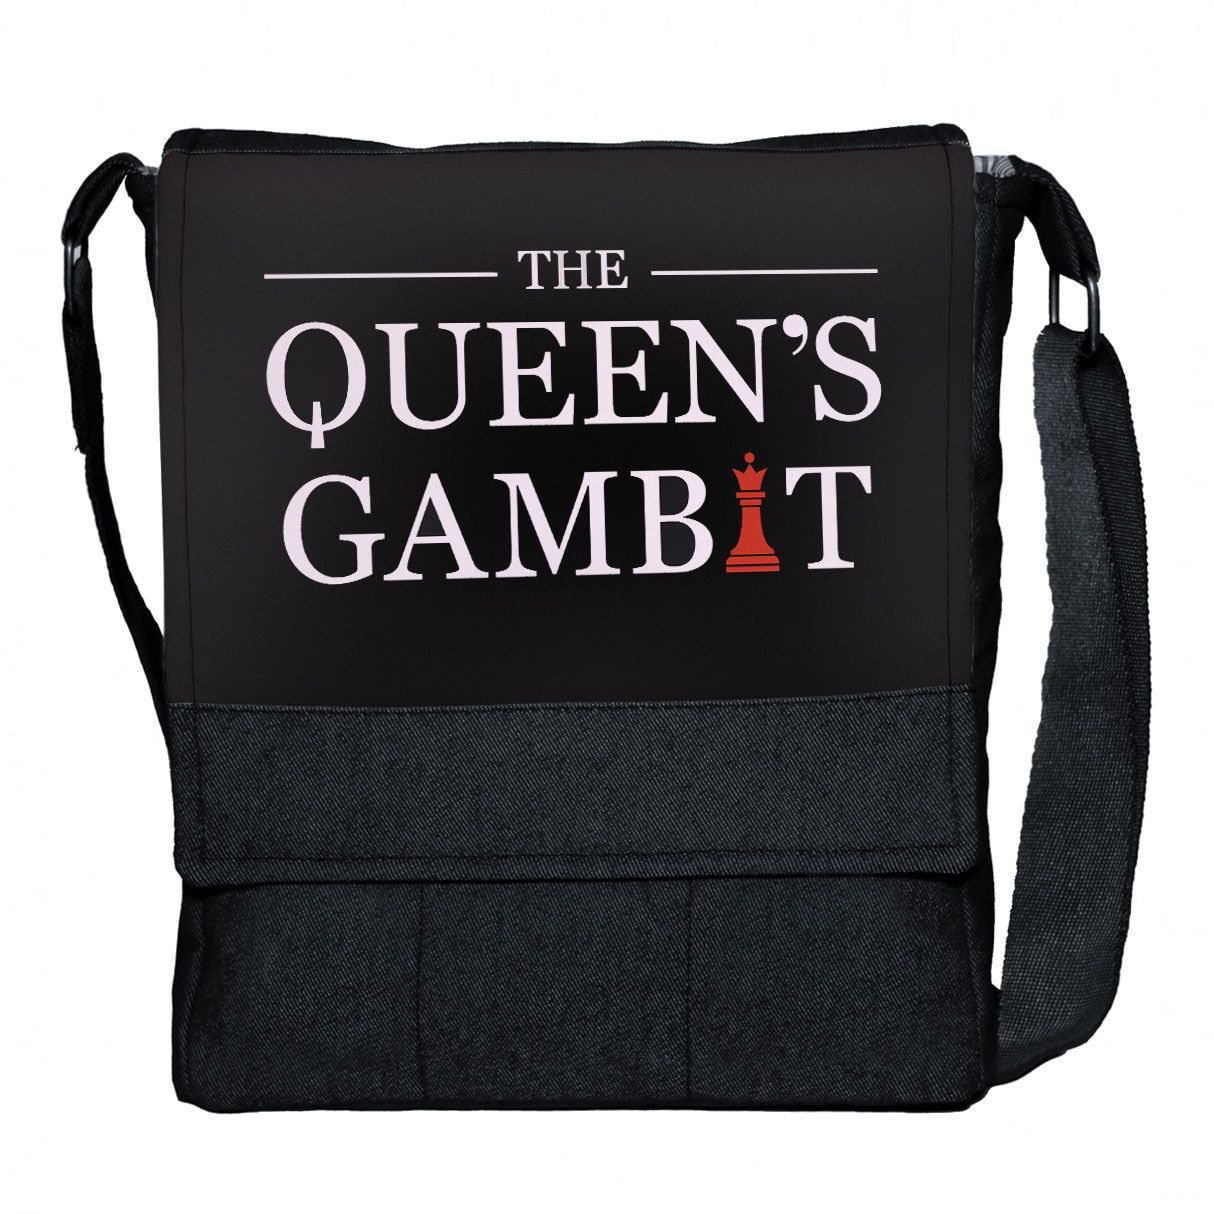 کیف رودوشی چی چاپ طرح Queens Gambit کد 65557 -  - 1